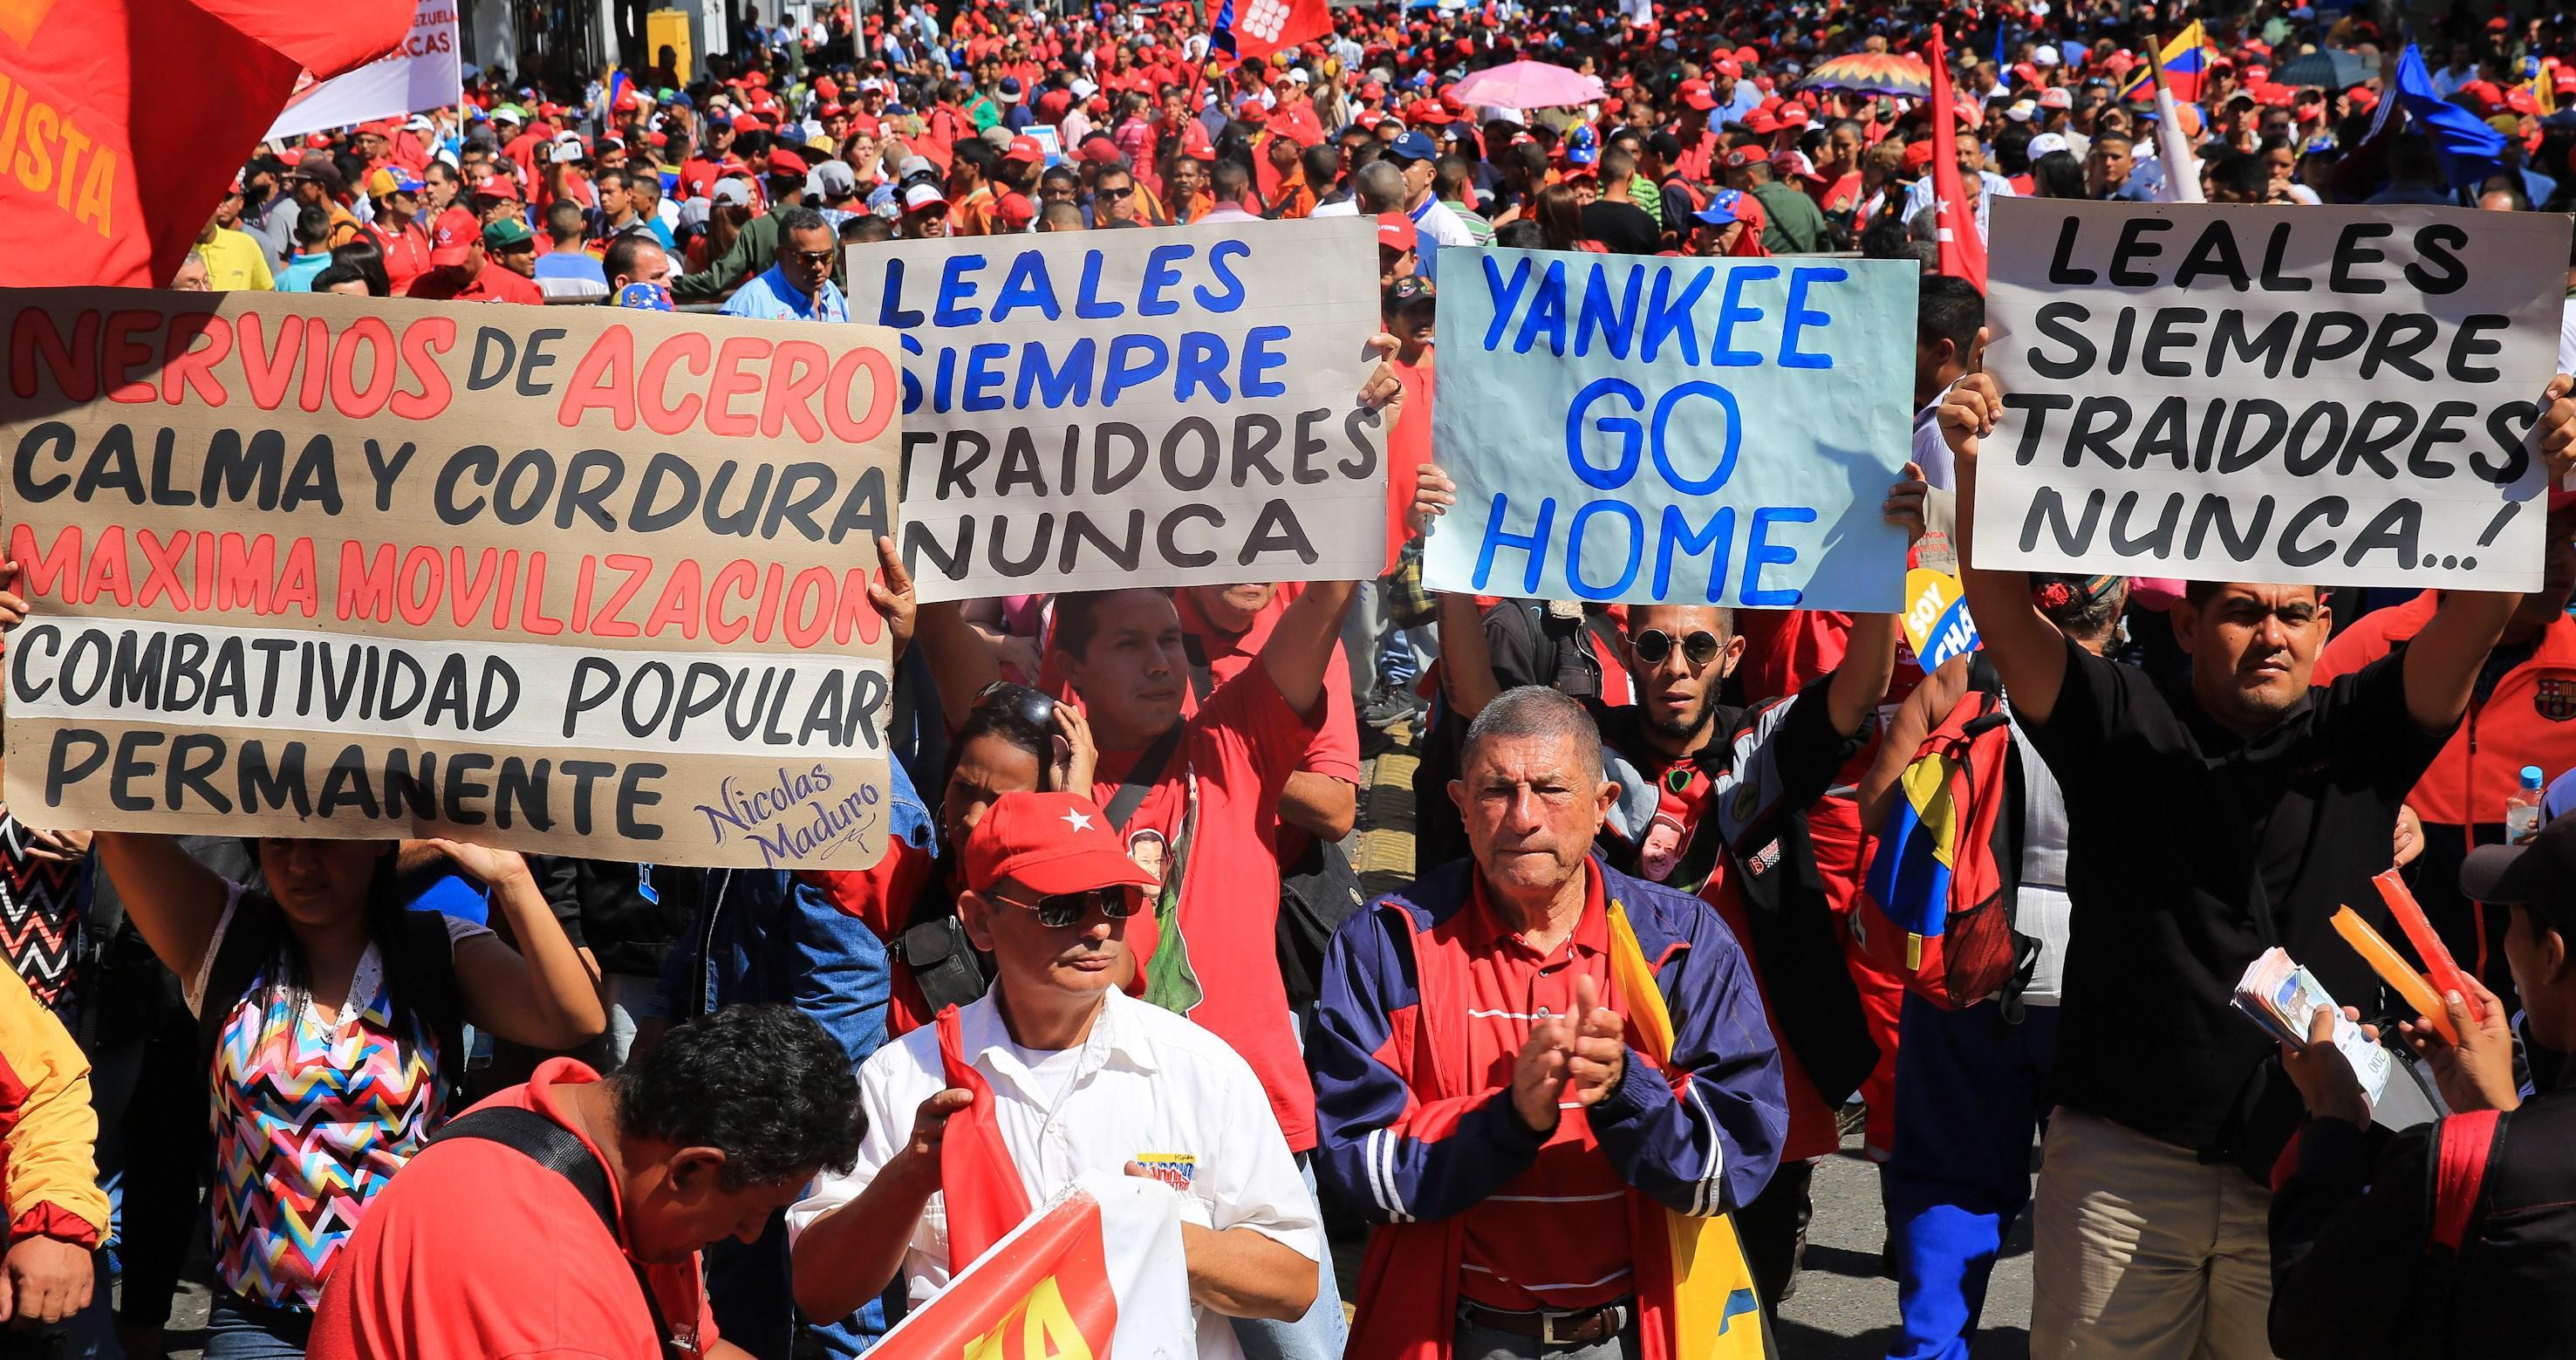 Sostenitori del presidente venezuelano Nicolas Maduro marciano per le vie di Caracas